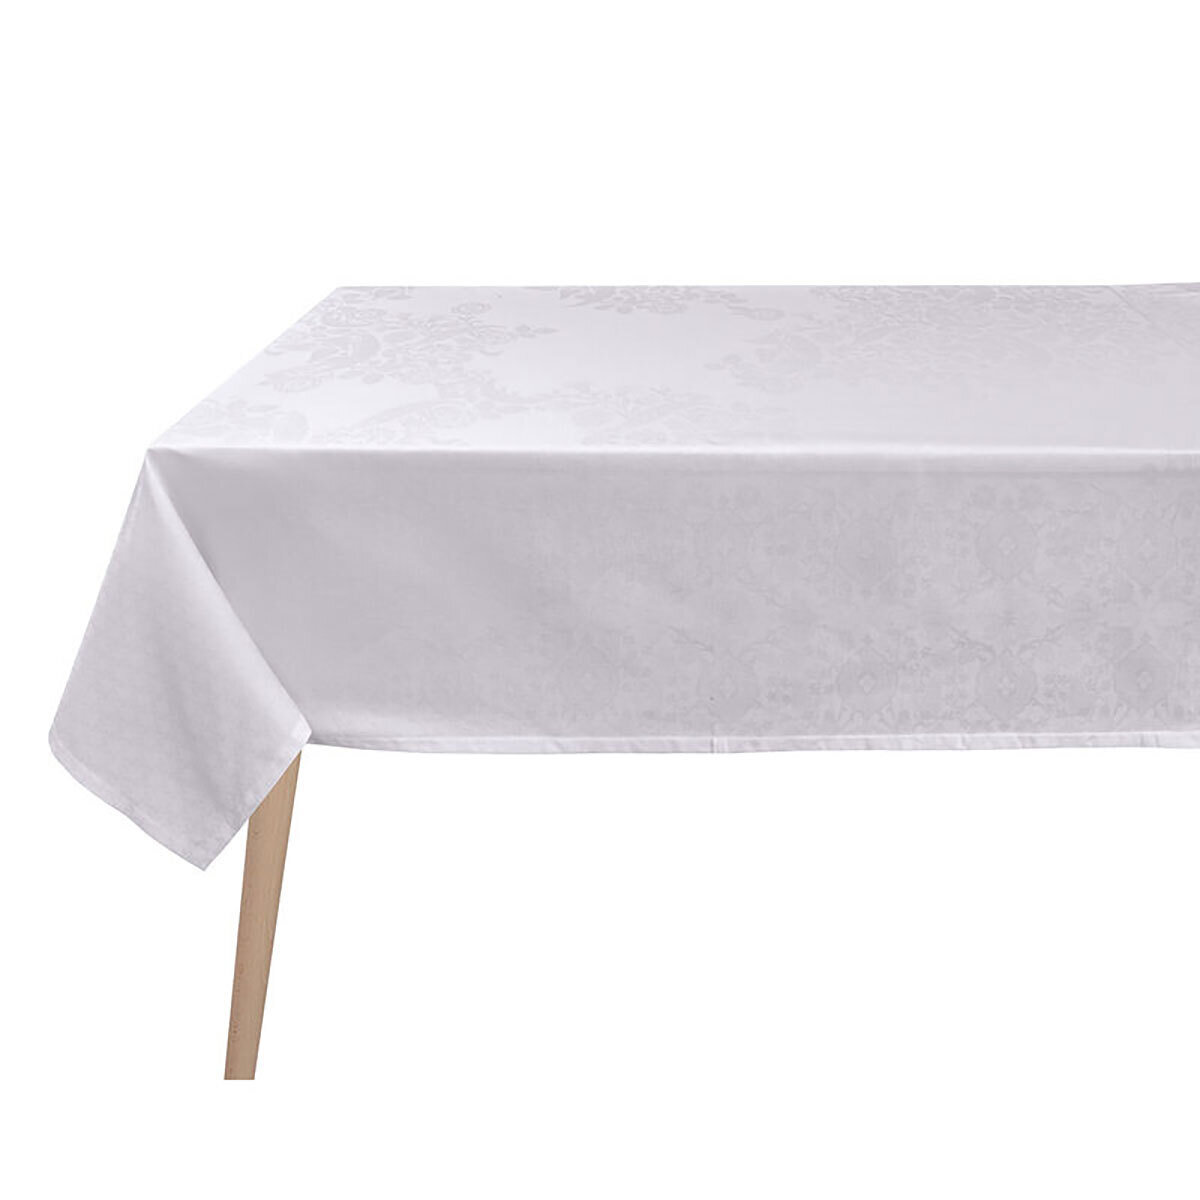 Le Jacquard Francais Voyage Iconique White Tablecloth 68 x 98 Inch 28660